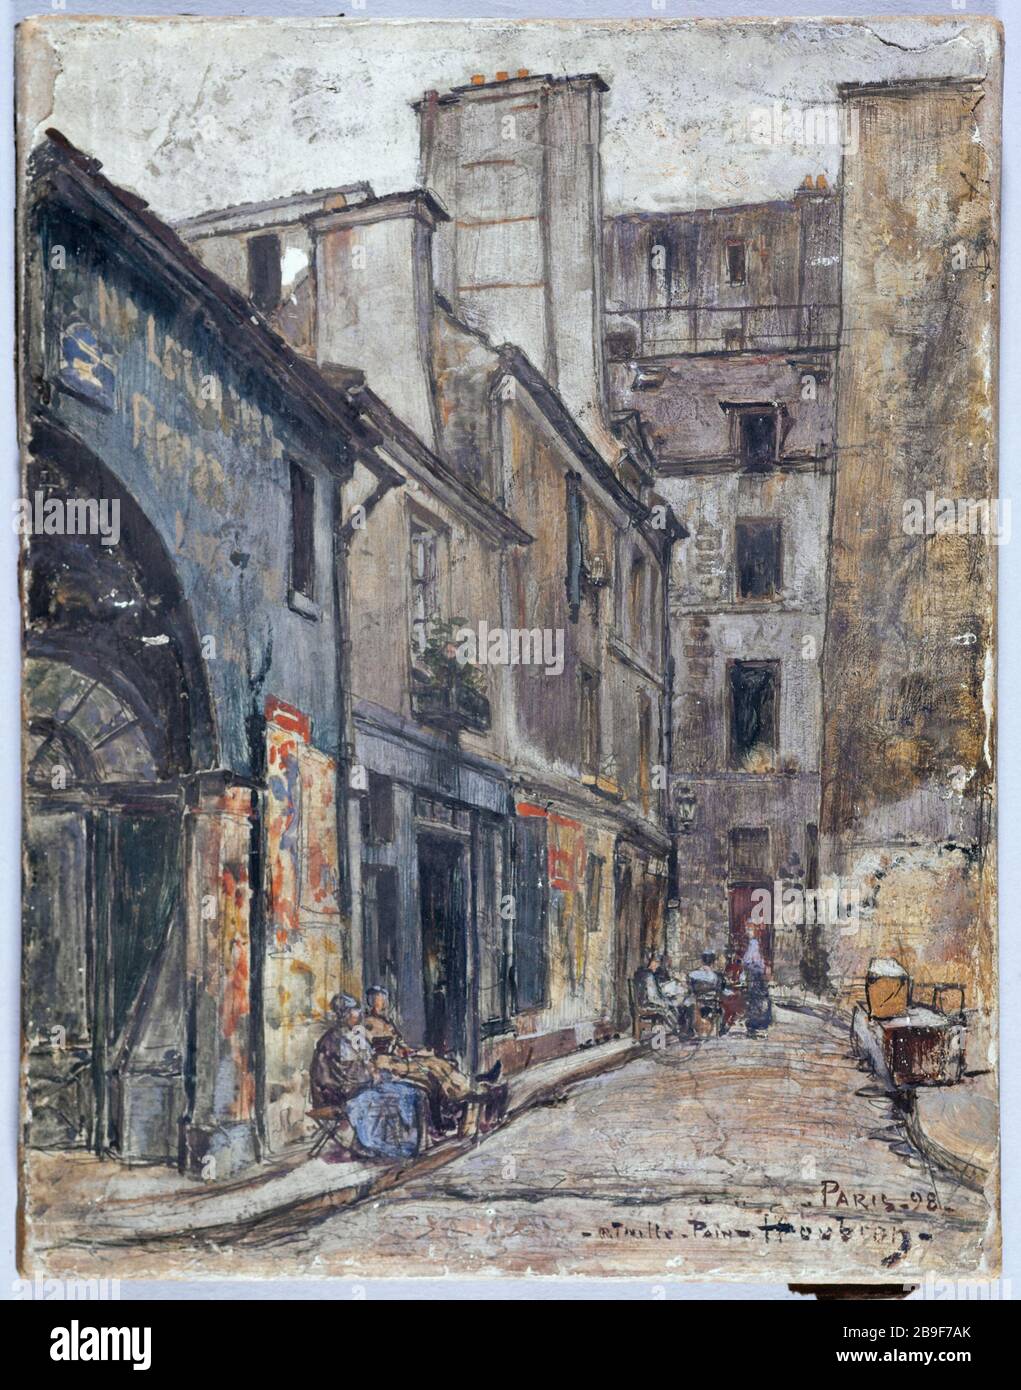 La strada Taillepain Frédéric-Anatole Houbron (1851-1908). "La rue Taillepain". Peinture sur enduit frais sur toile, 1898. Parigi, musée Carnavalet. Foto Stock